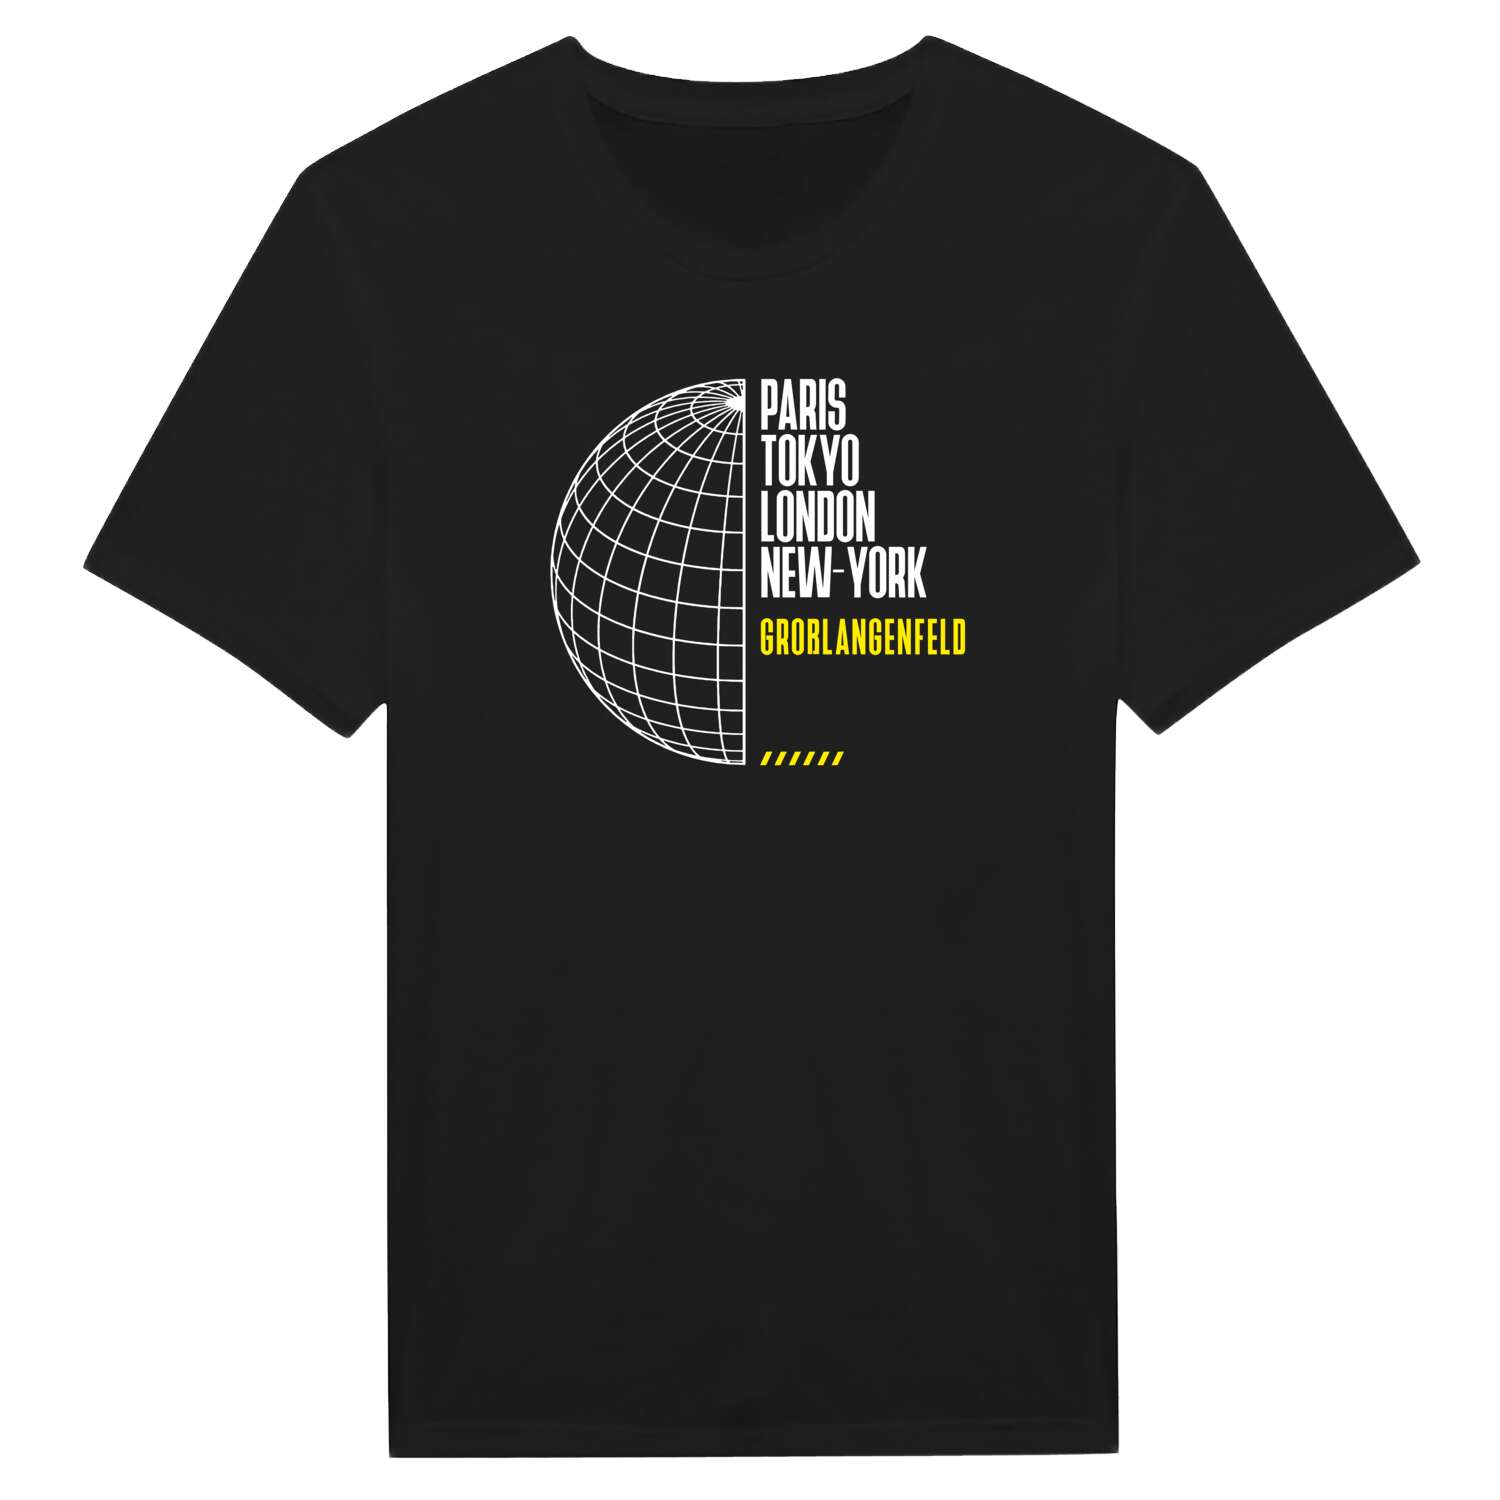 Großlangenfeld T-Shirt »Paris Tokyo London«